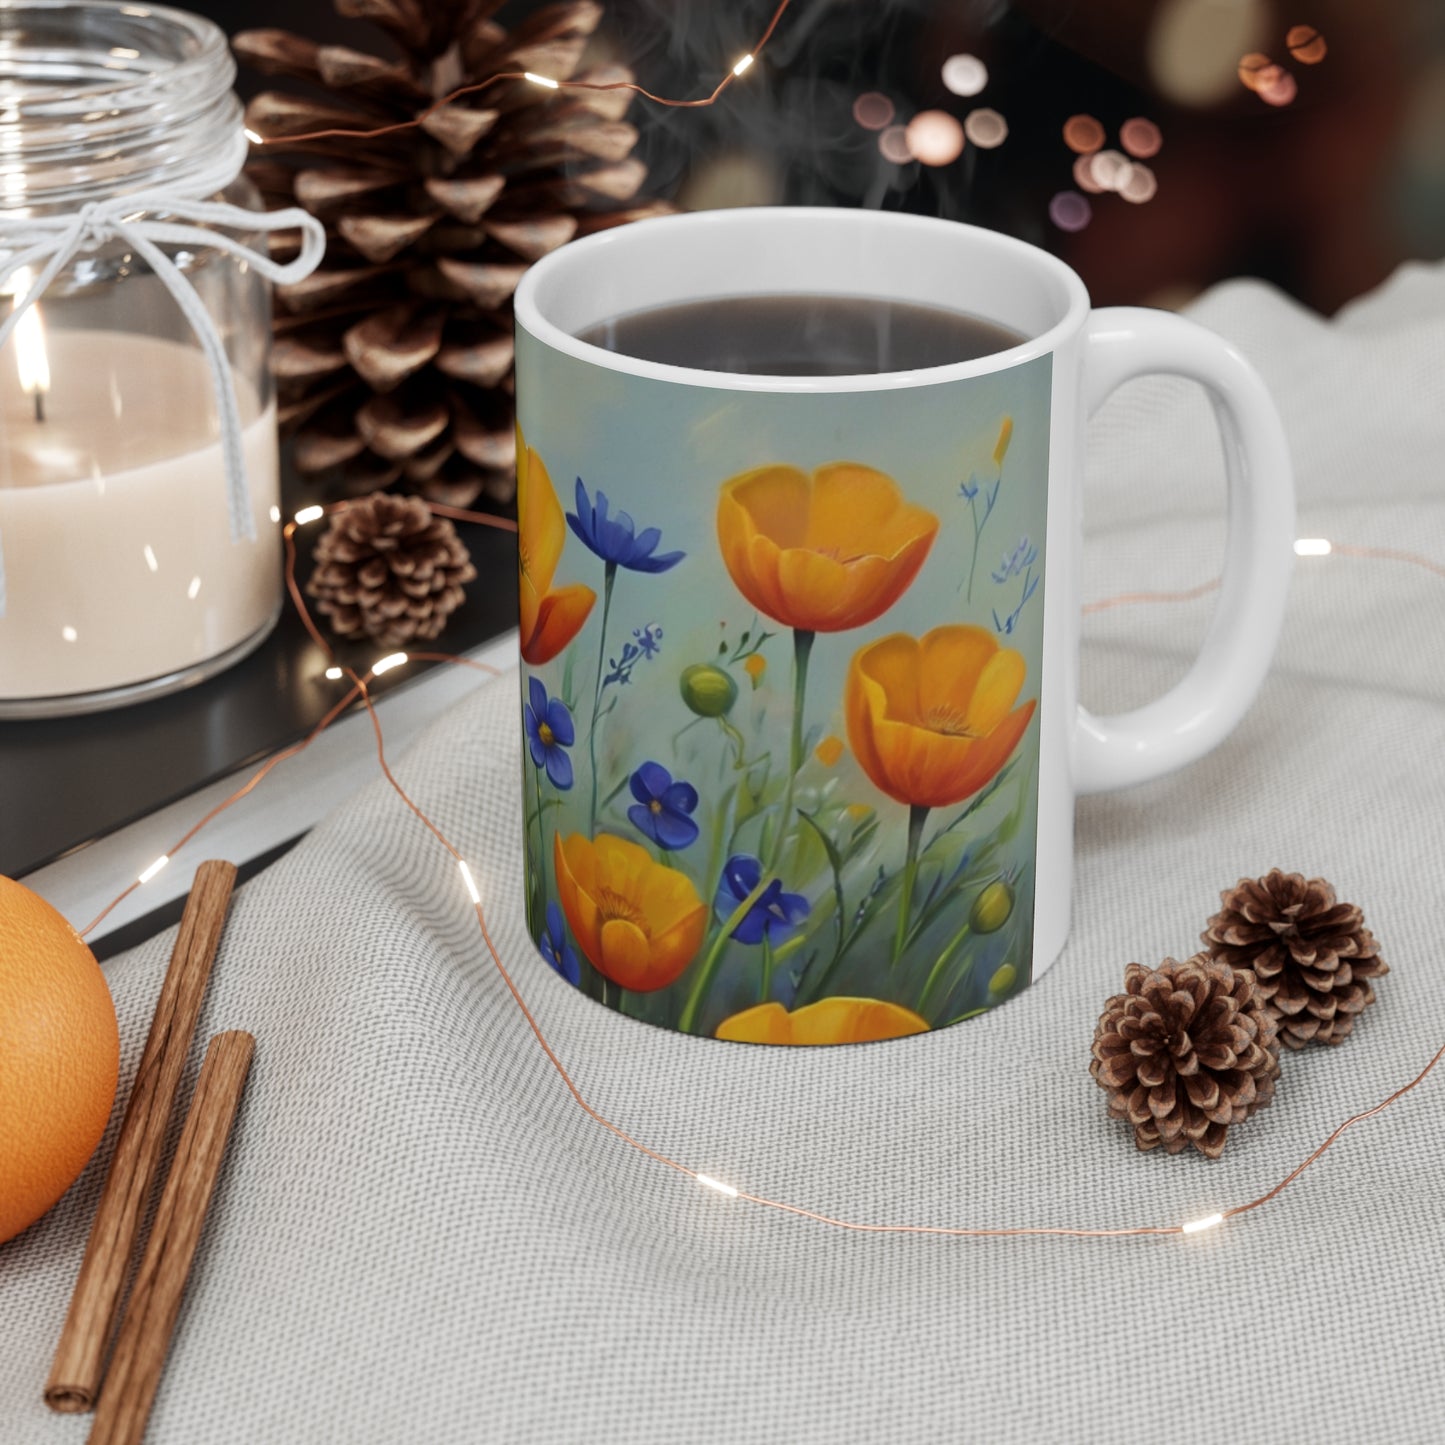 Colourful Buttercups Mug - Ceramic Coffee Mug 11oz